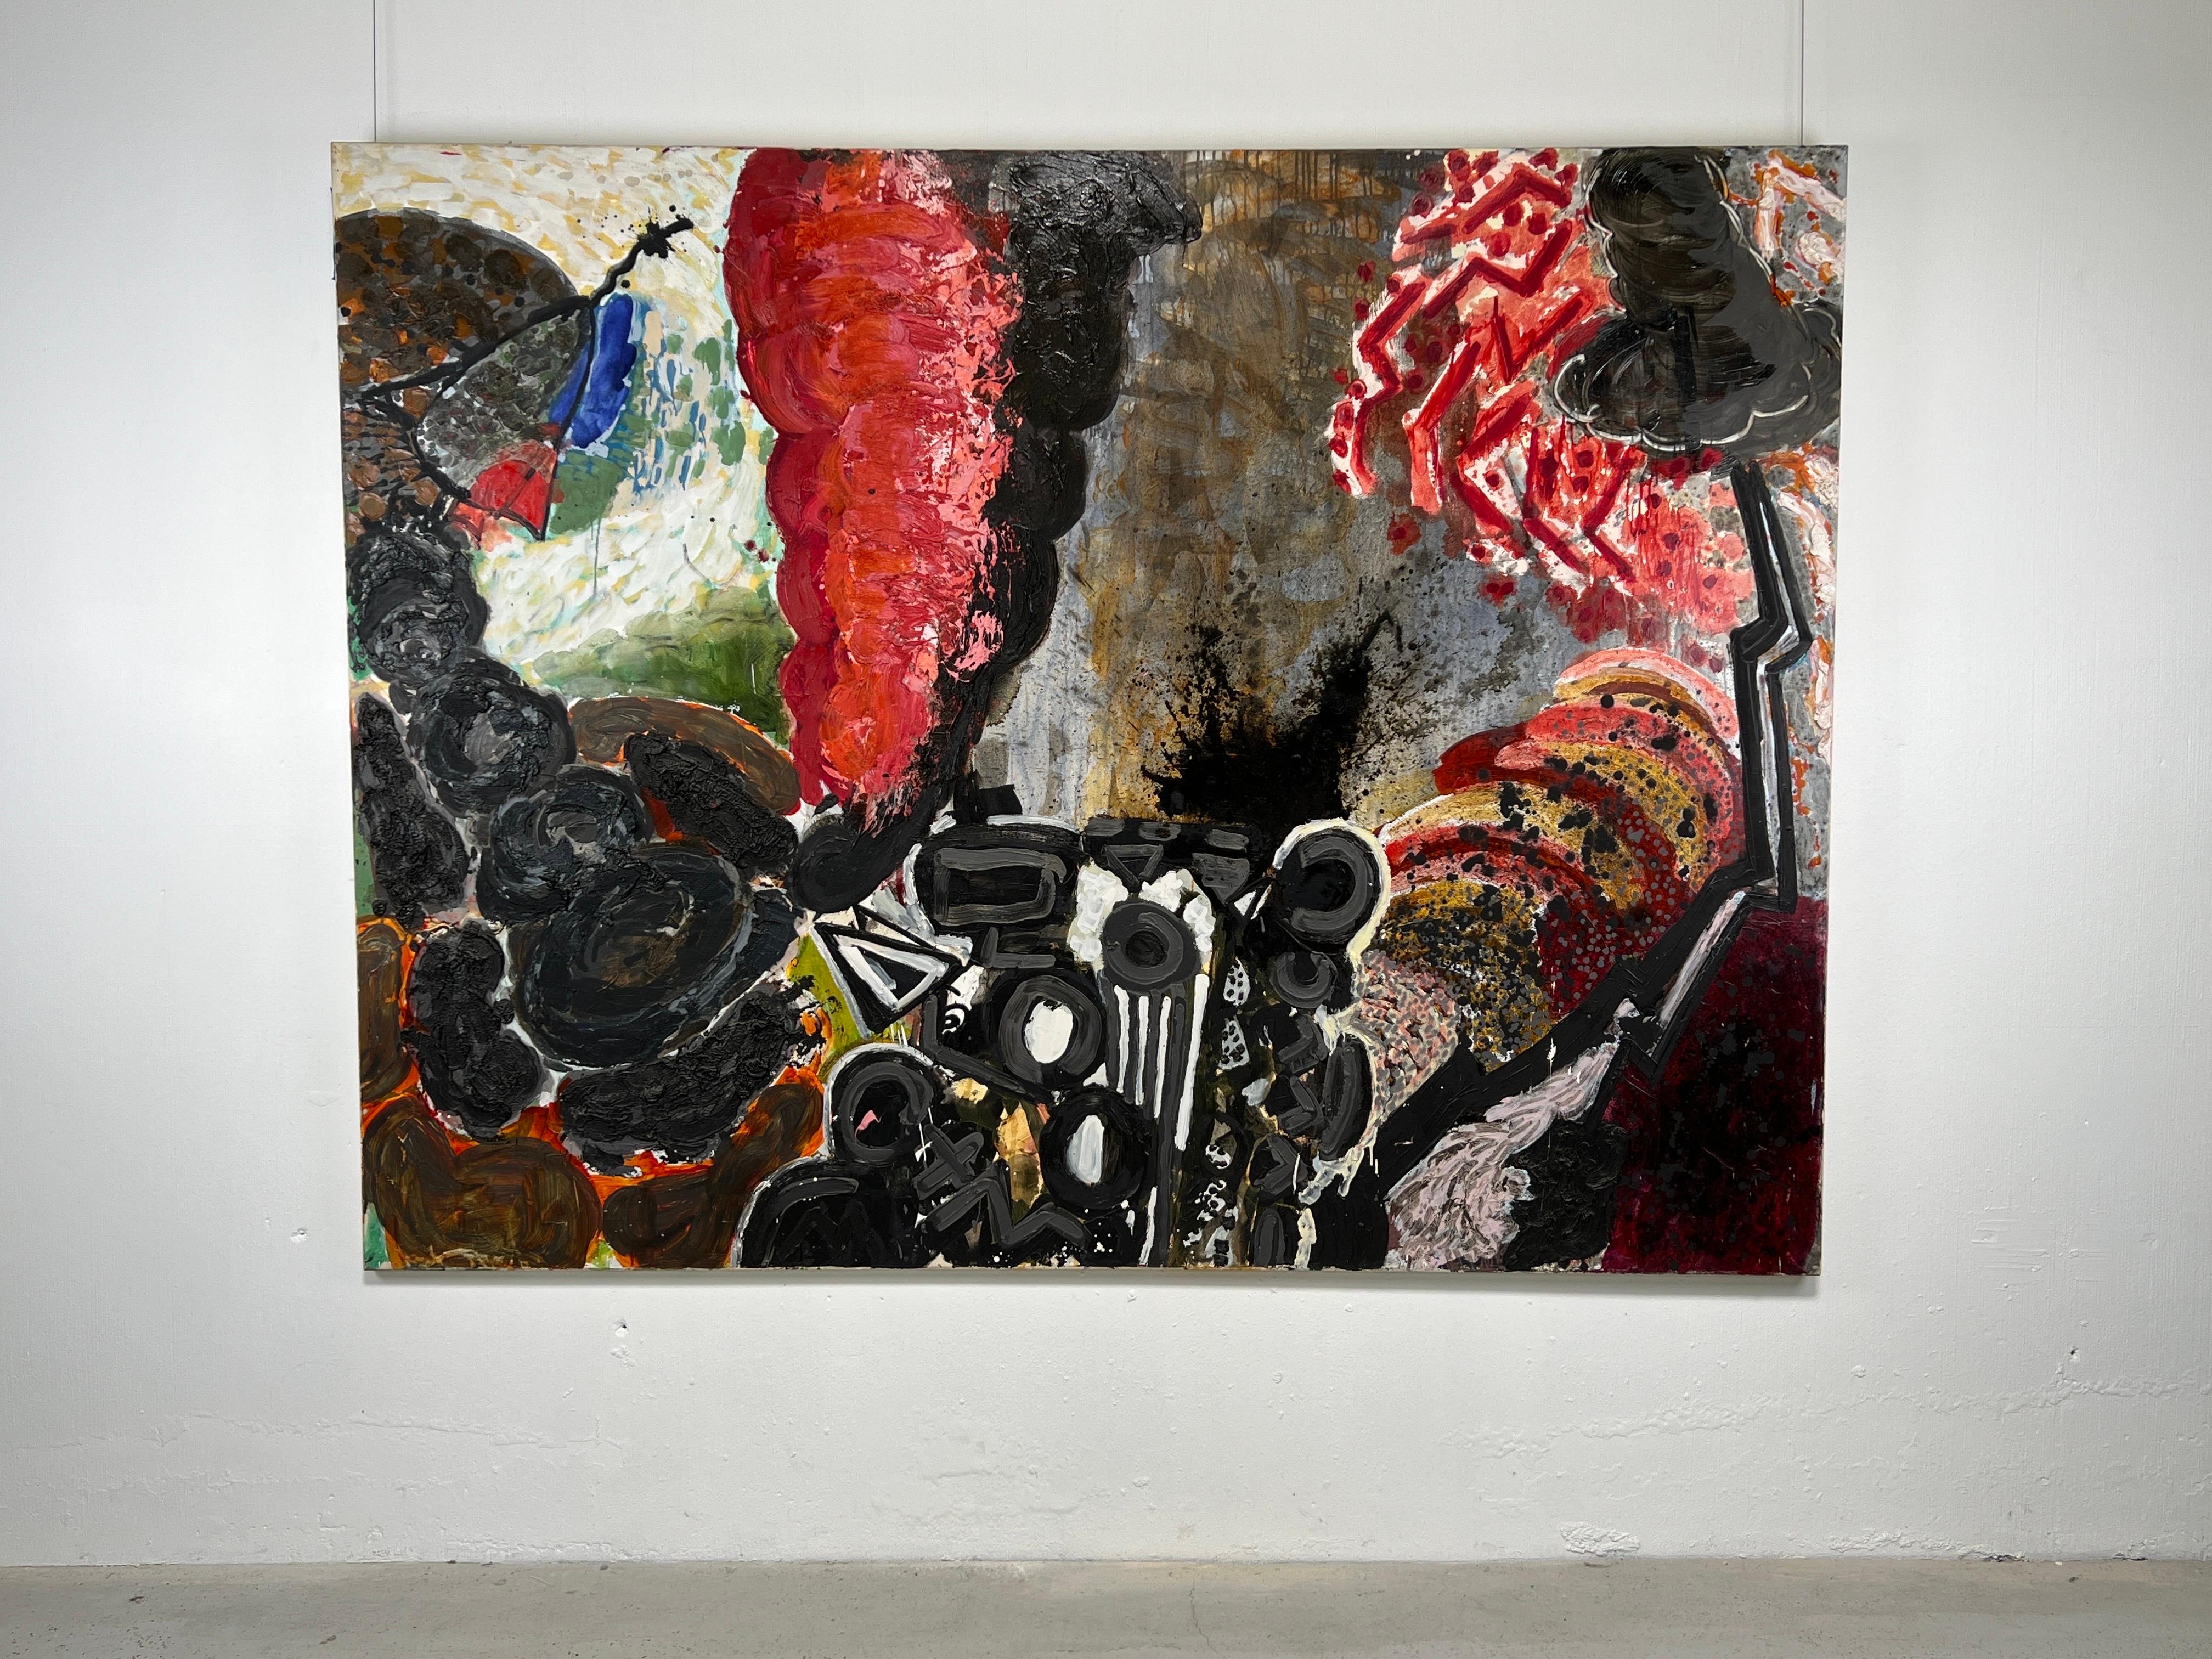 La peintre new-yorkaise Elizabeth Rosenblum (américaine née en 1954) superpose des images disparates pour former des motifs abstraits complexes dans sa toile de 1982 intitulée 